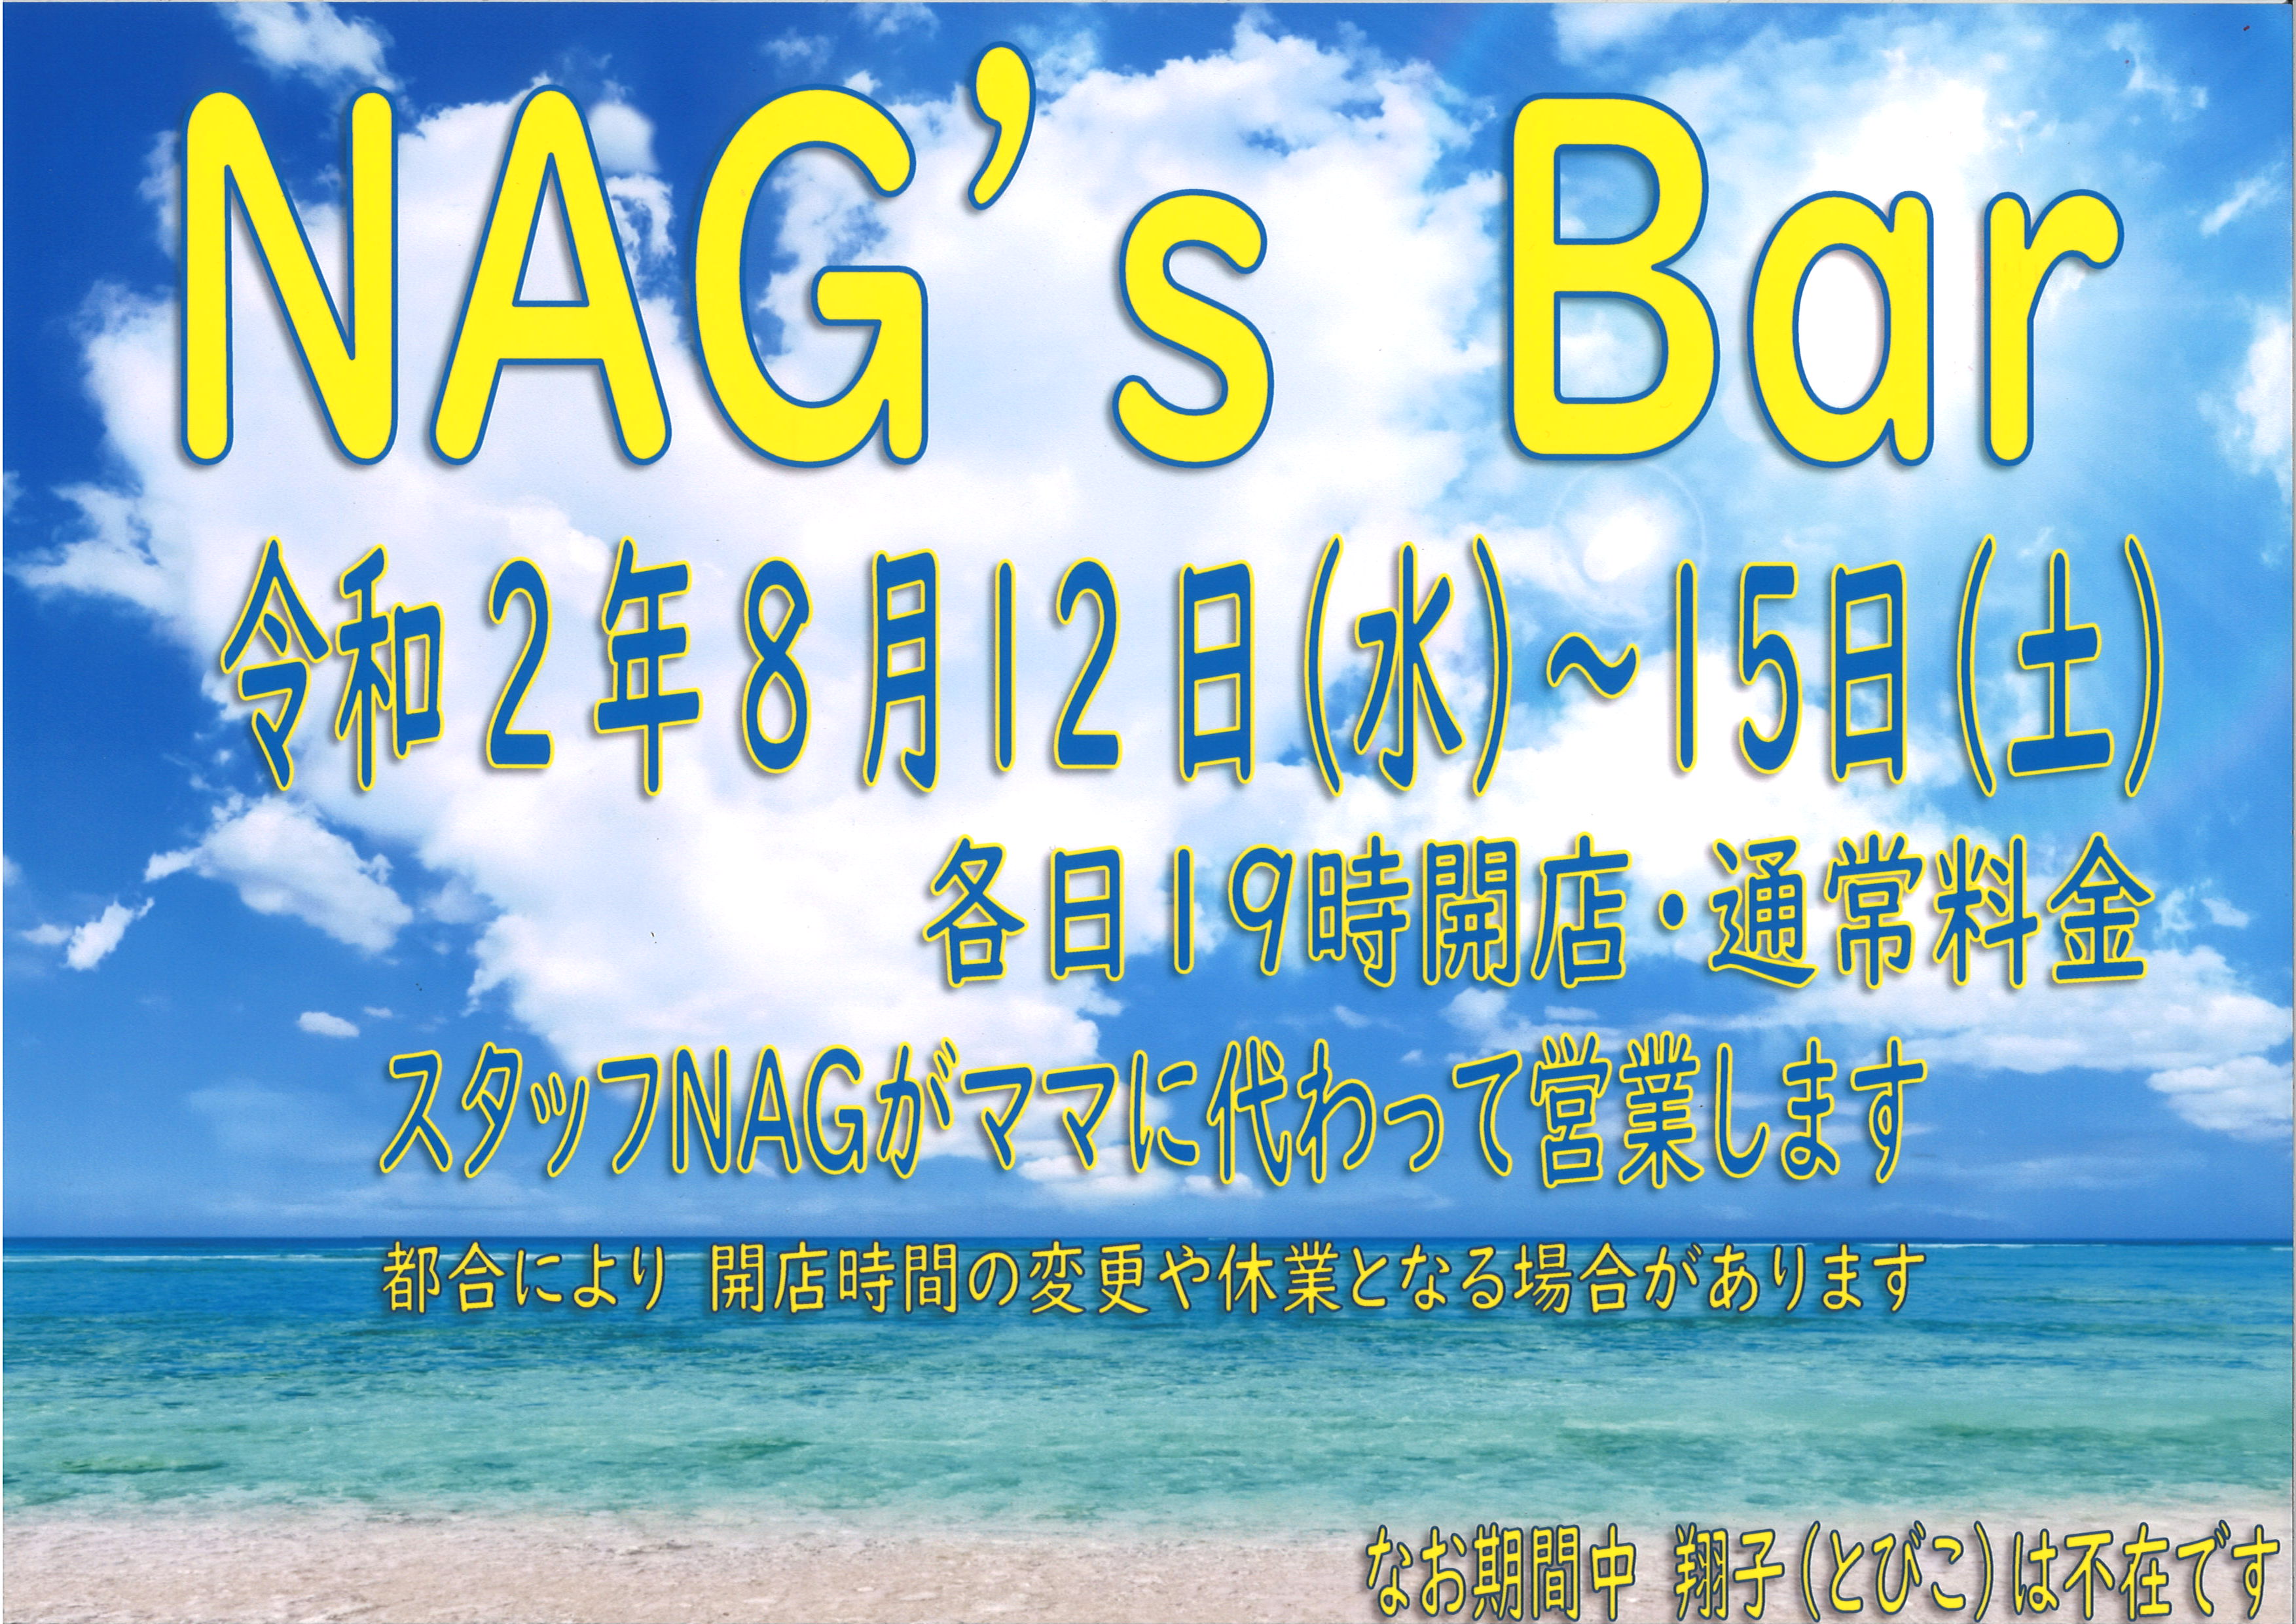 NAG's Bar